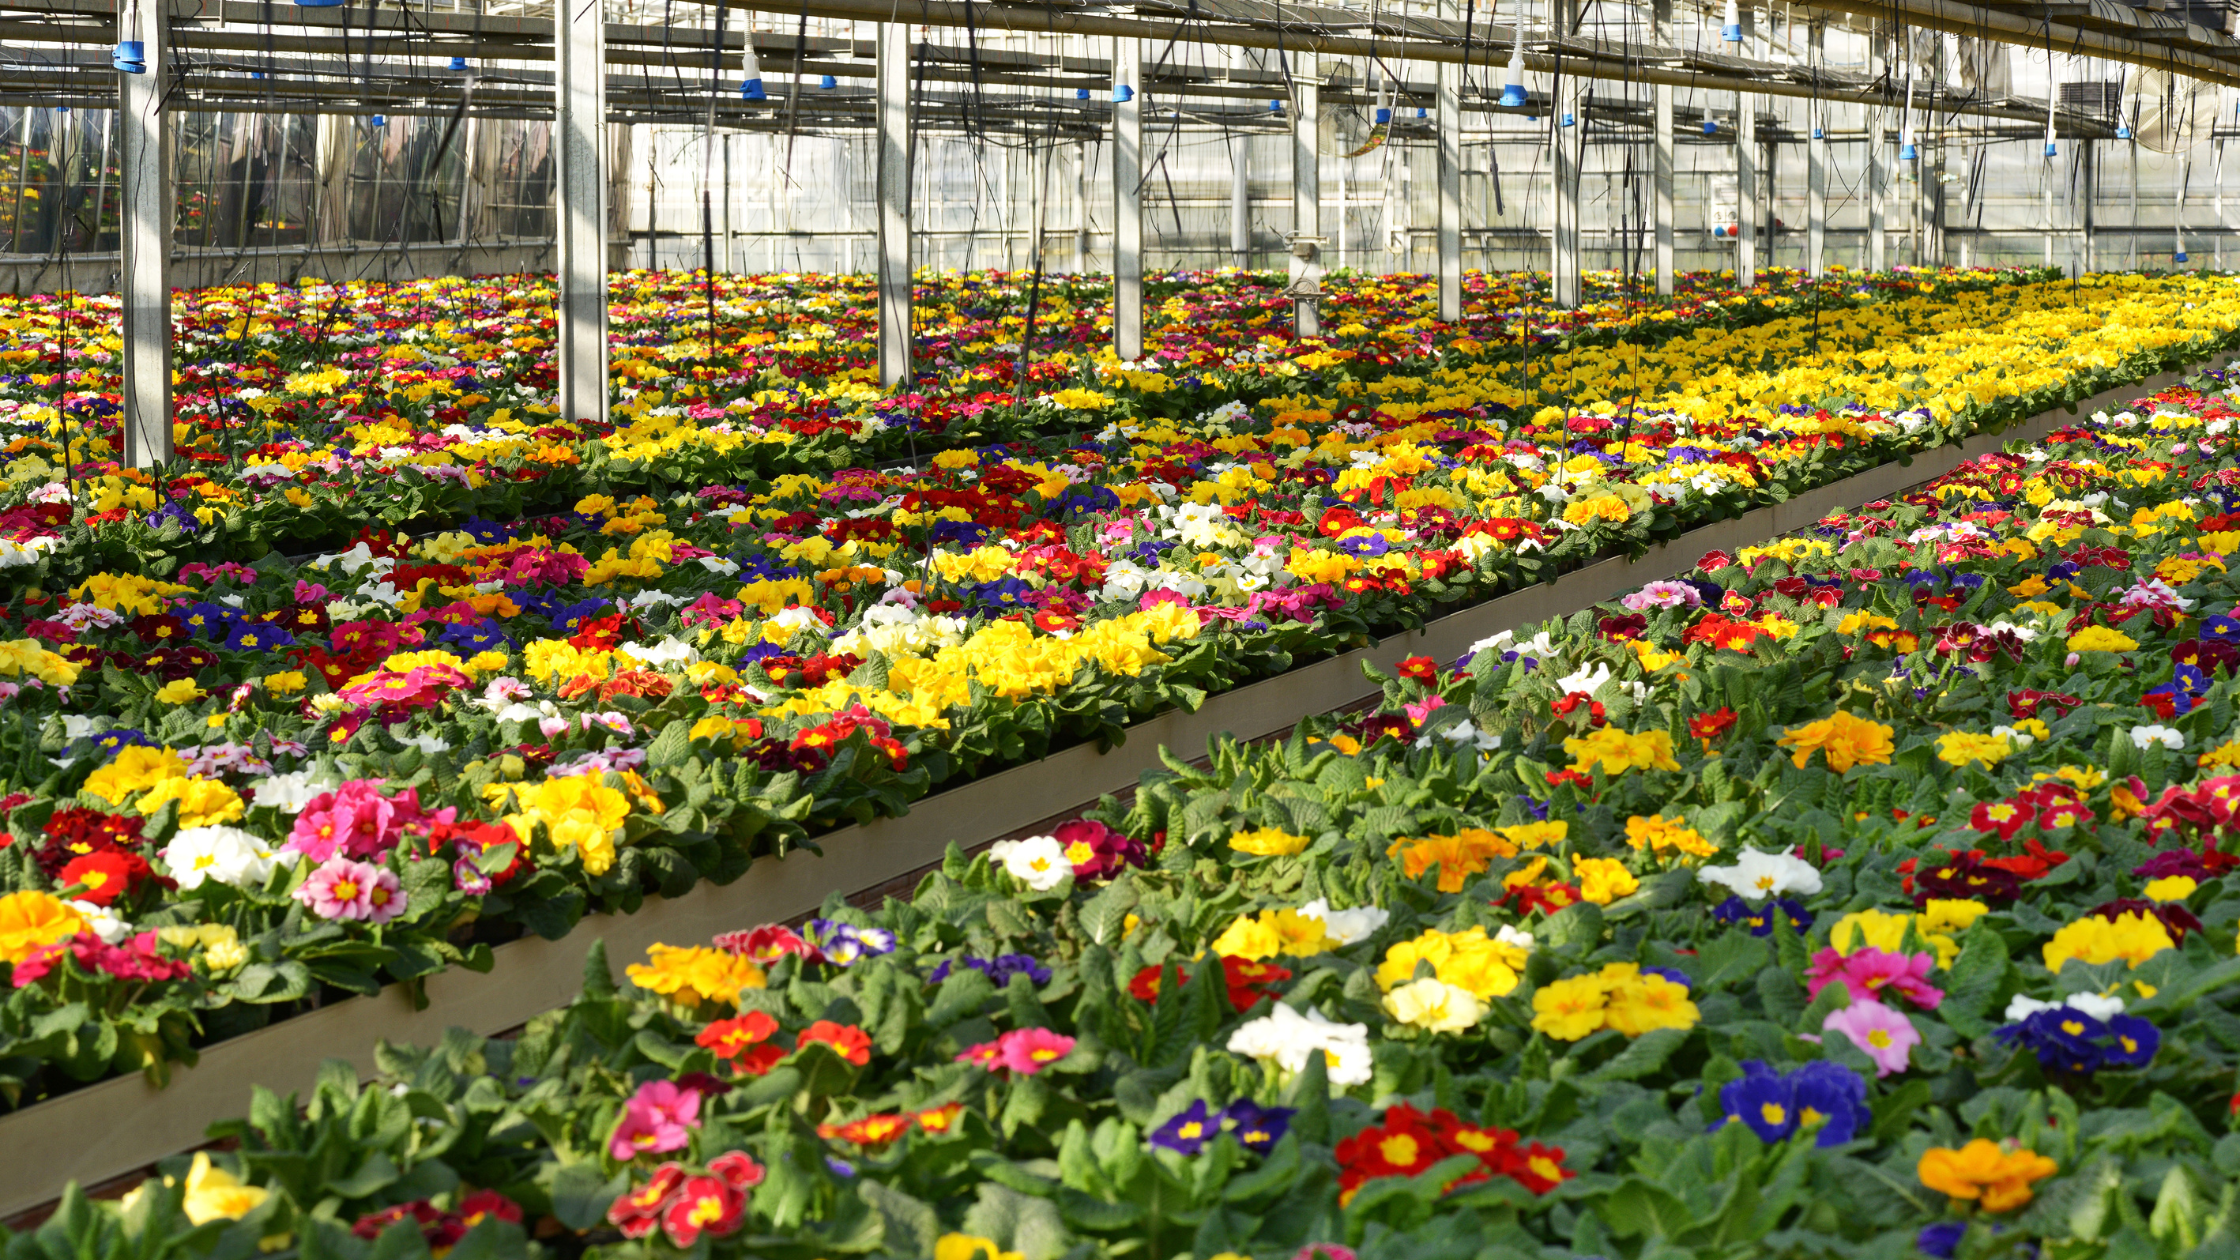 Aufdeckung der versteckten Kosten der Schnittblumenindustrie – Arbeitsausbeutung in der Blumenindustrie